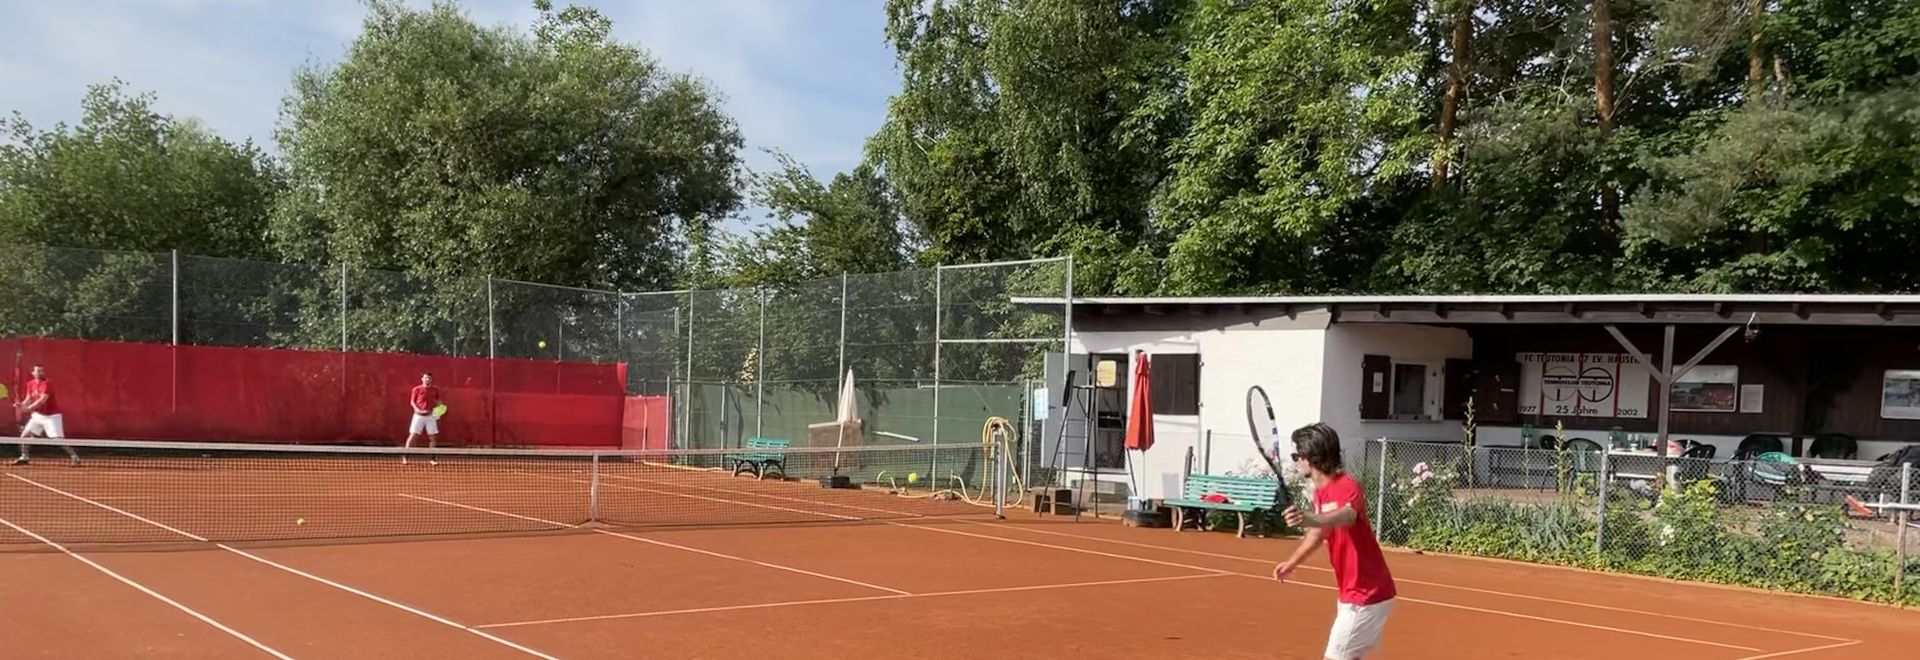 Das Onlineplatzbuchungssystem für 
alle Mitglieder der Tennisabteilung